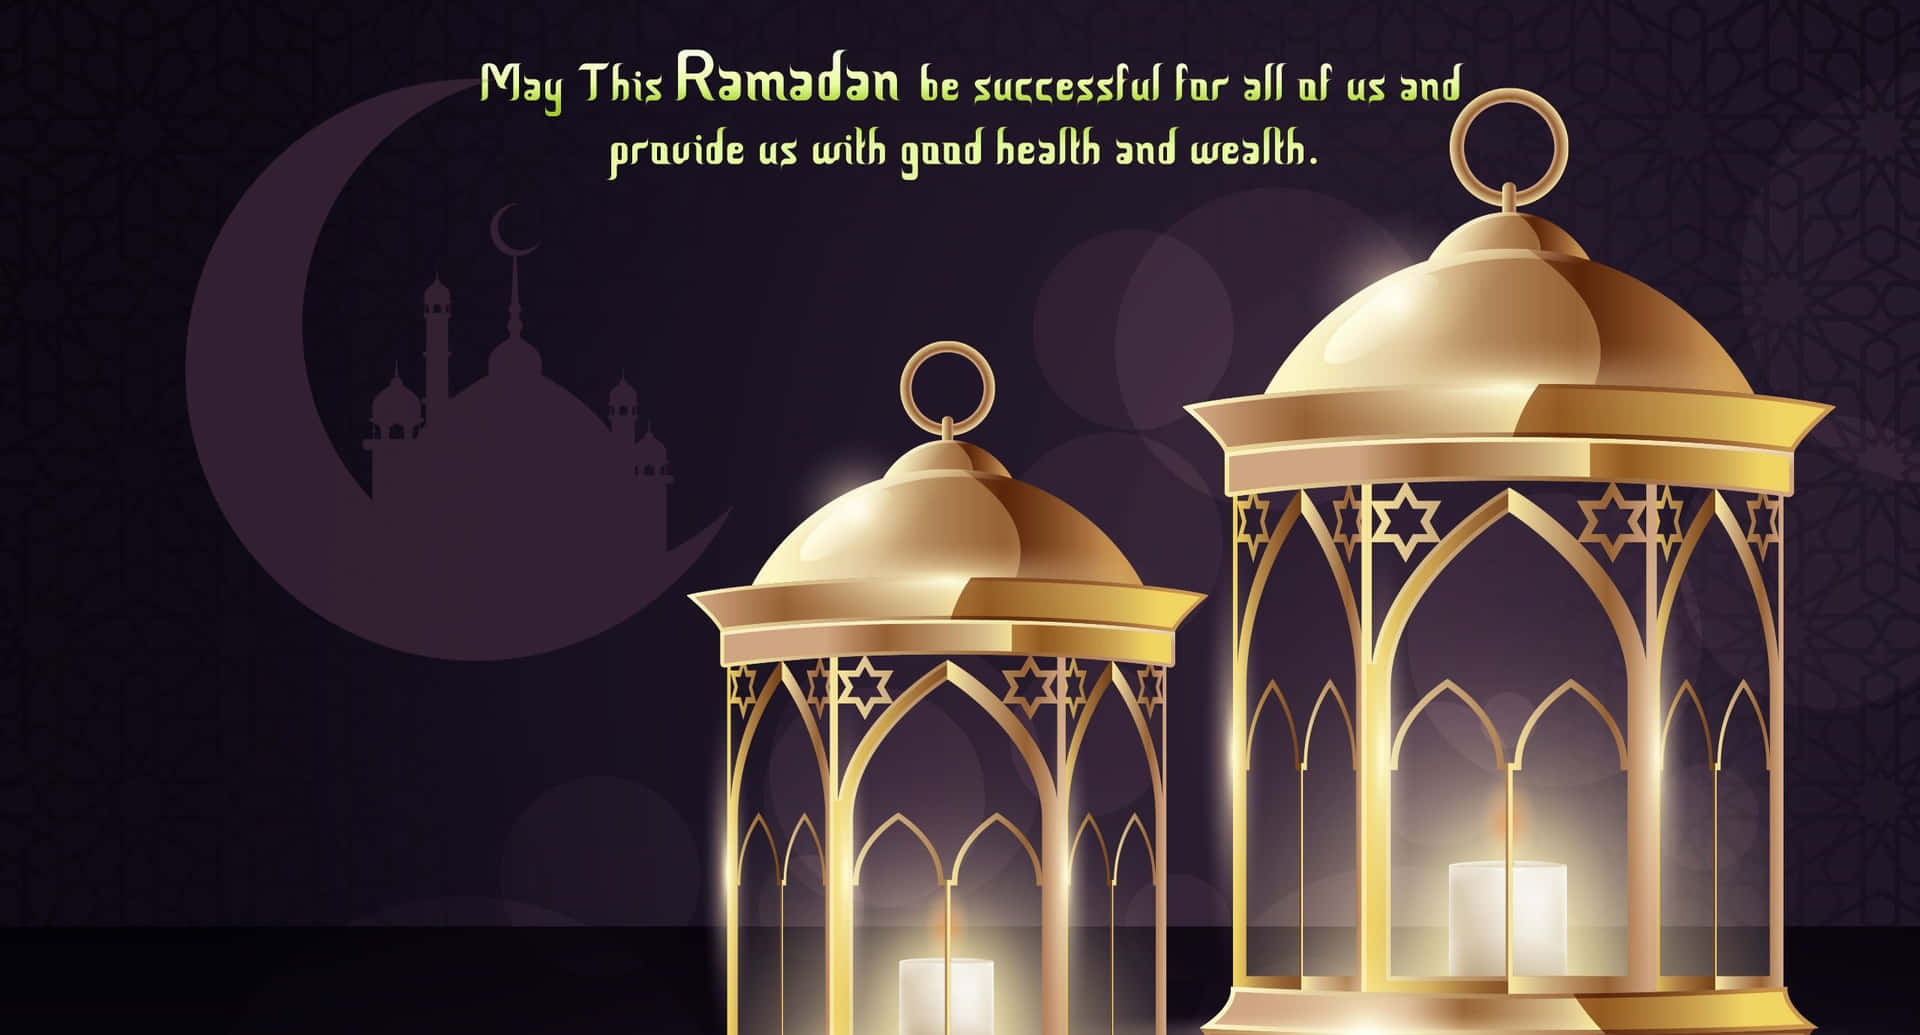 Ramadanmeddelande Bild